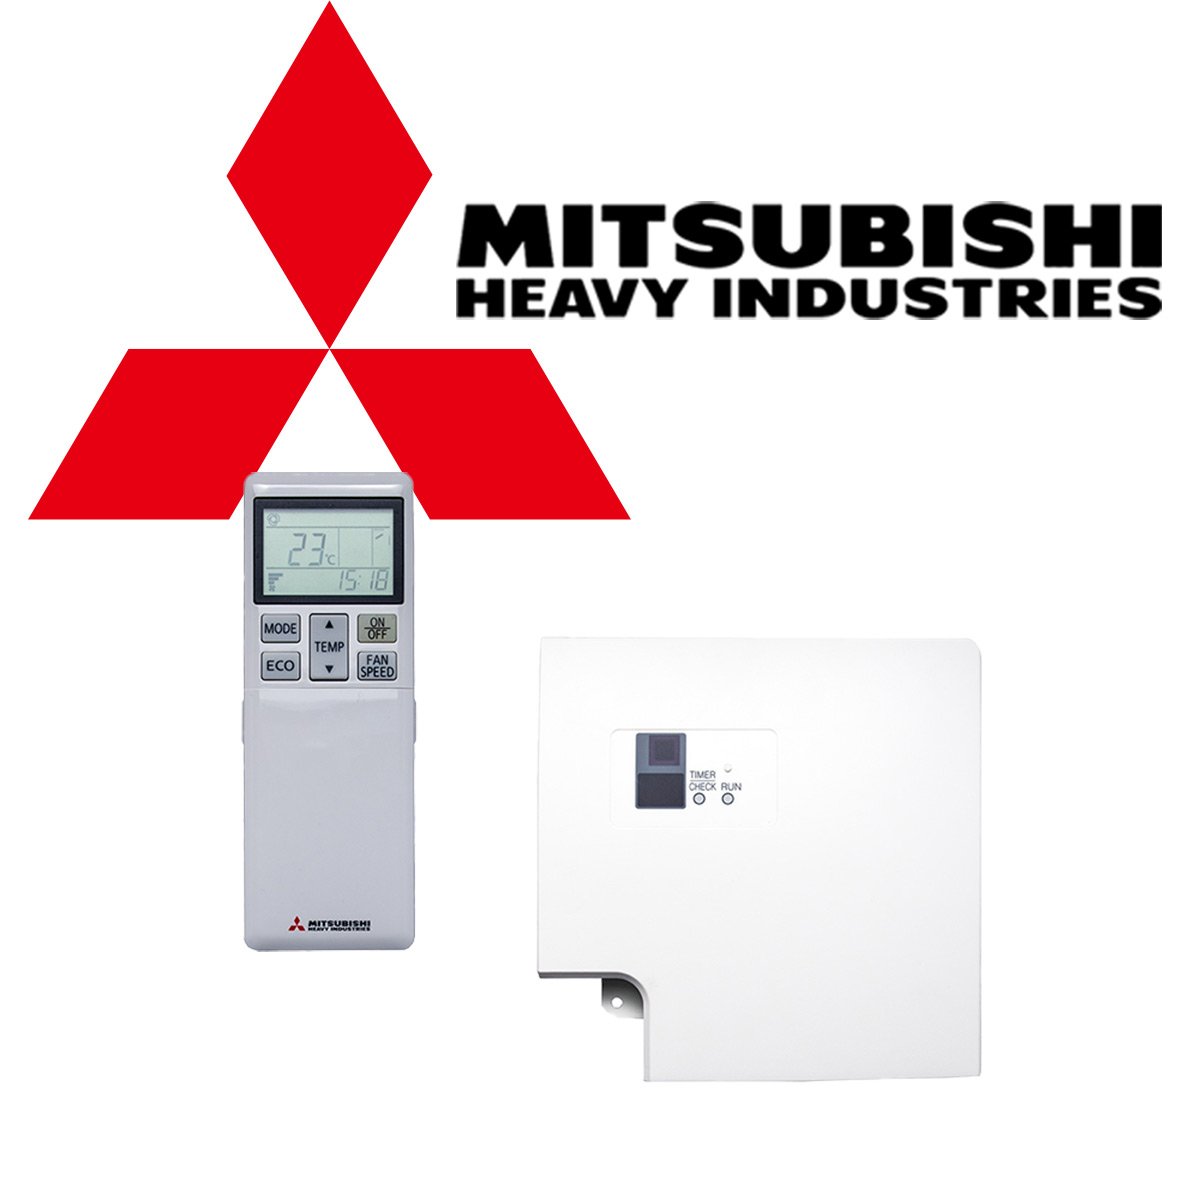 MItsubishi Klimaanlage Kabel Fernbedienung RCN TC